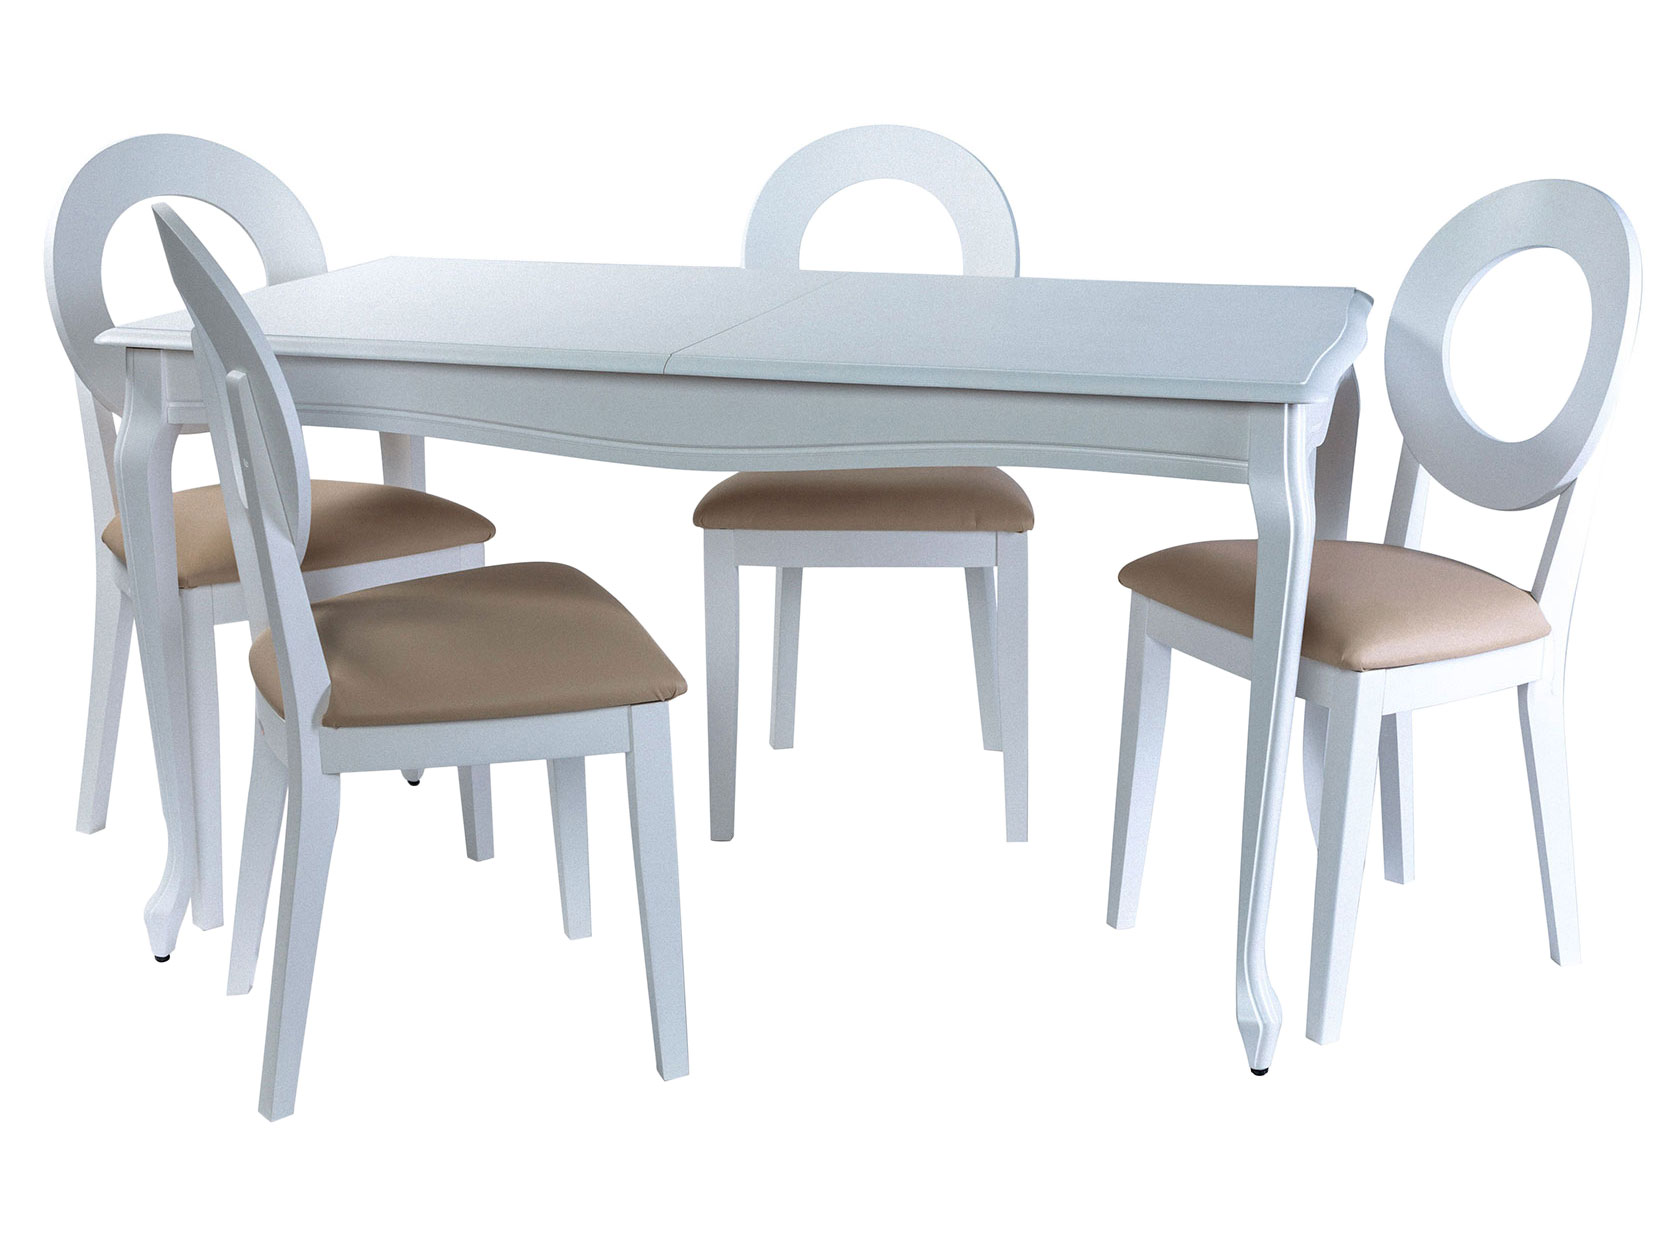 фото Обеденная группа кабриоль стол + 4 стула коломбо эмаль белая/nitro cream, кожзам, малый аврора